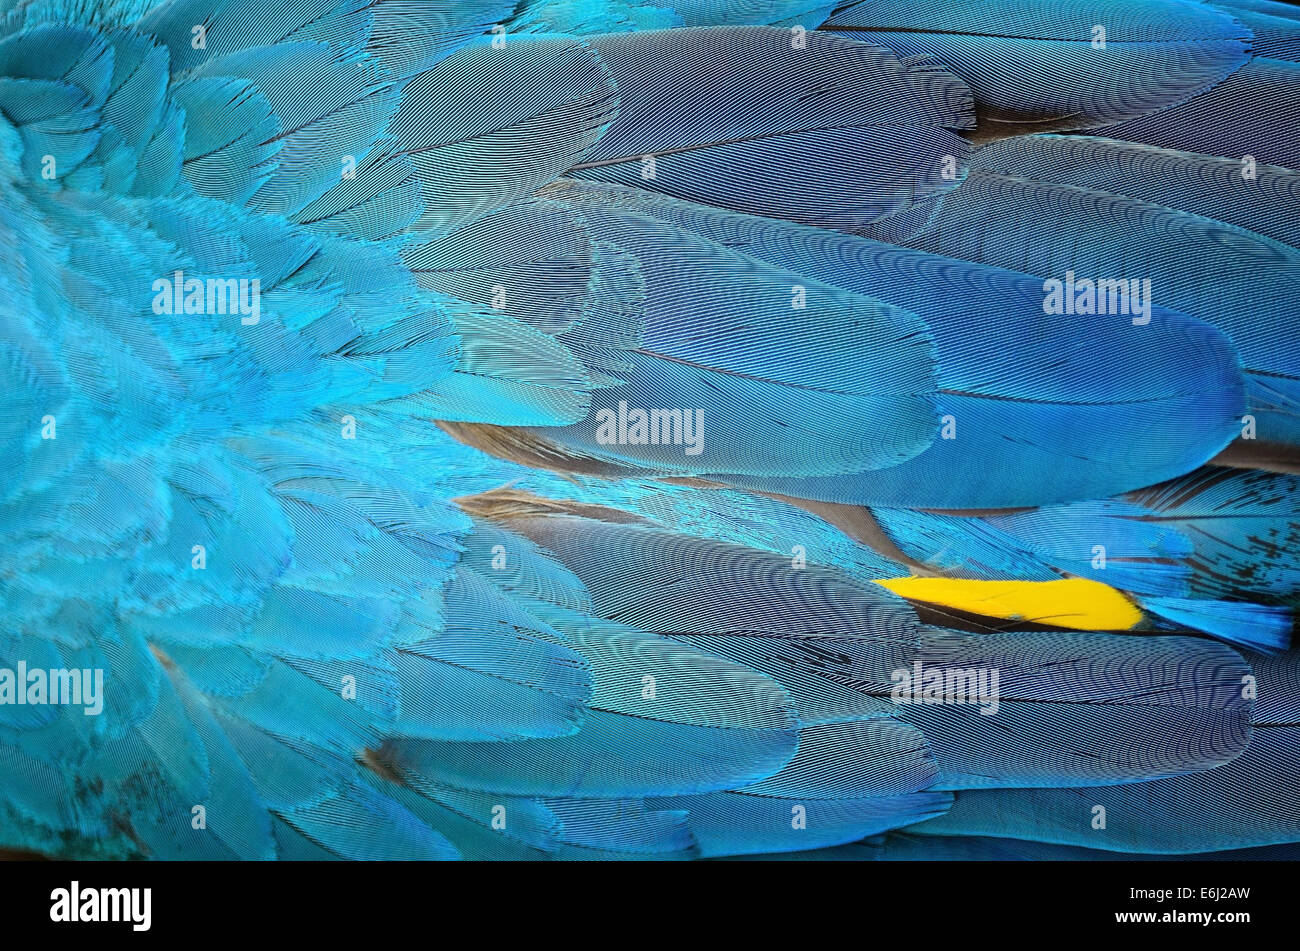 Les plumes des oiseaux colorés, Ara bleu et or plumes de fond Banque D'Images